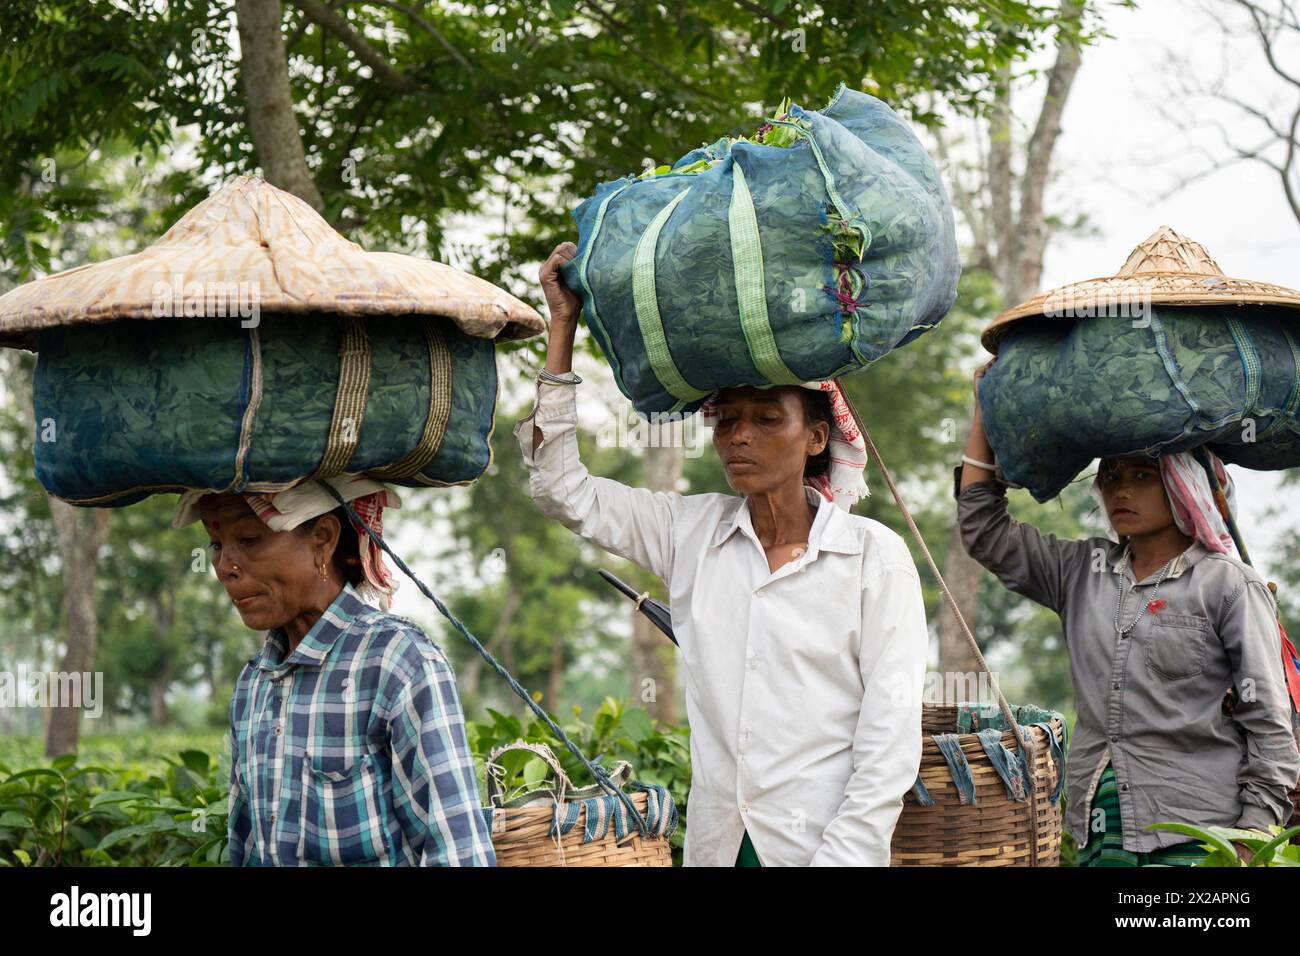 Bokakhat, Inde. 20 avril 2024. Les pluckers de thé des femmes transportent des sacs de feuilles de thé sur la tête alors qu'elles reviennent après avoir cueilli des feuilles de thé dans un domaine de thé, à Bokakhat, Assam, Inde. L'industrie du thé en Assam est une partie importante et intégrale de la production mondiale de thé et un acteur majeur dans l'économie indienne. Assam, situé dans la partie nord-est de l'Inde, est l'une des plus grandes régions productrices de thé du monde, connue en particulier pour son thé Assam, un thé noir connu pour son corps, sa vigueur, sa saveur maltée et sa couleur forte et lumineuse. Crédit : David Talukdar/Alamy Live News Banque D'Images